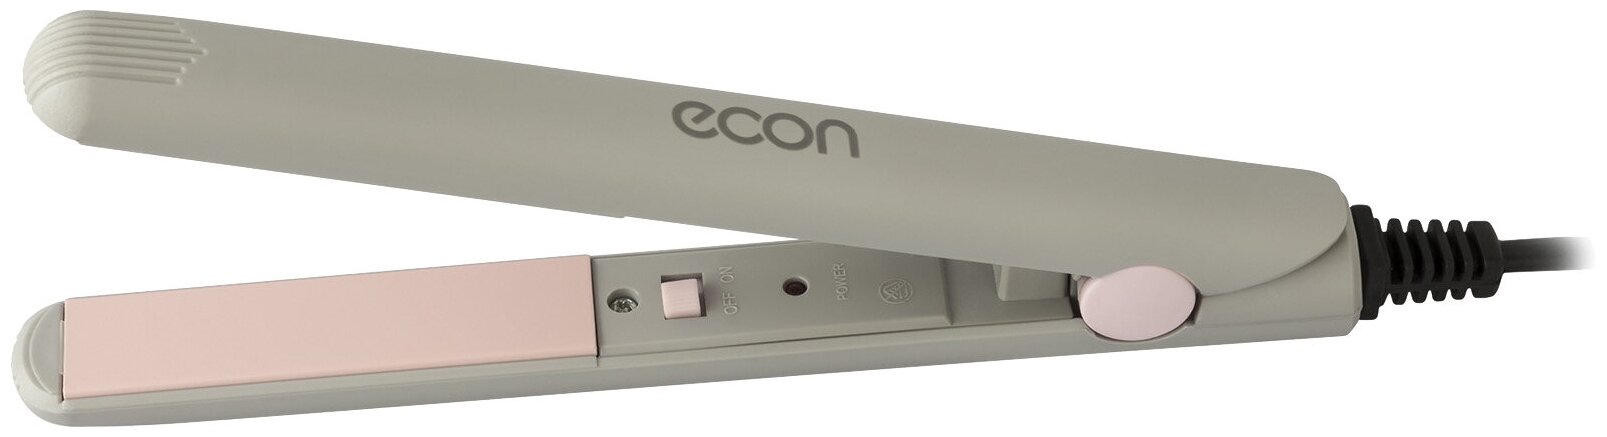 Выпрямитель ECON ECO-BH001S, серый/розовый